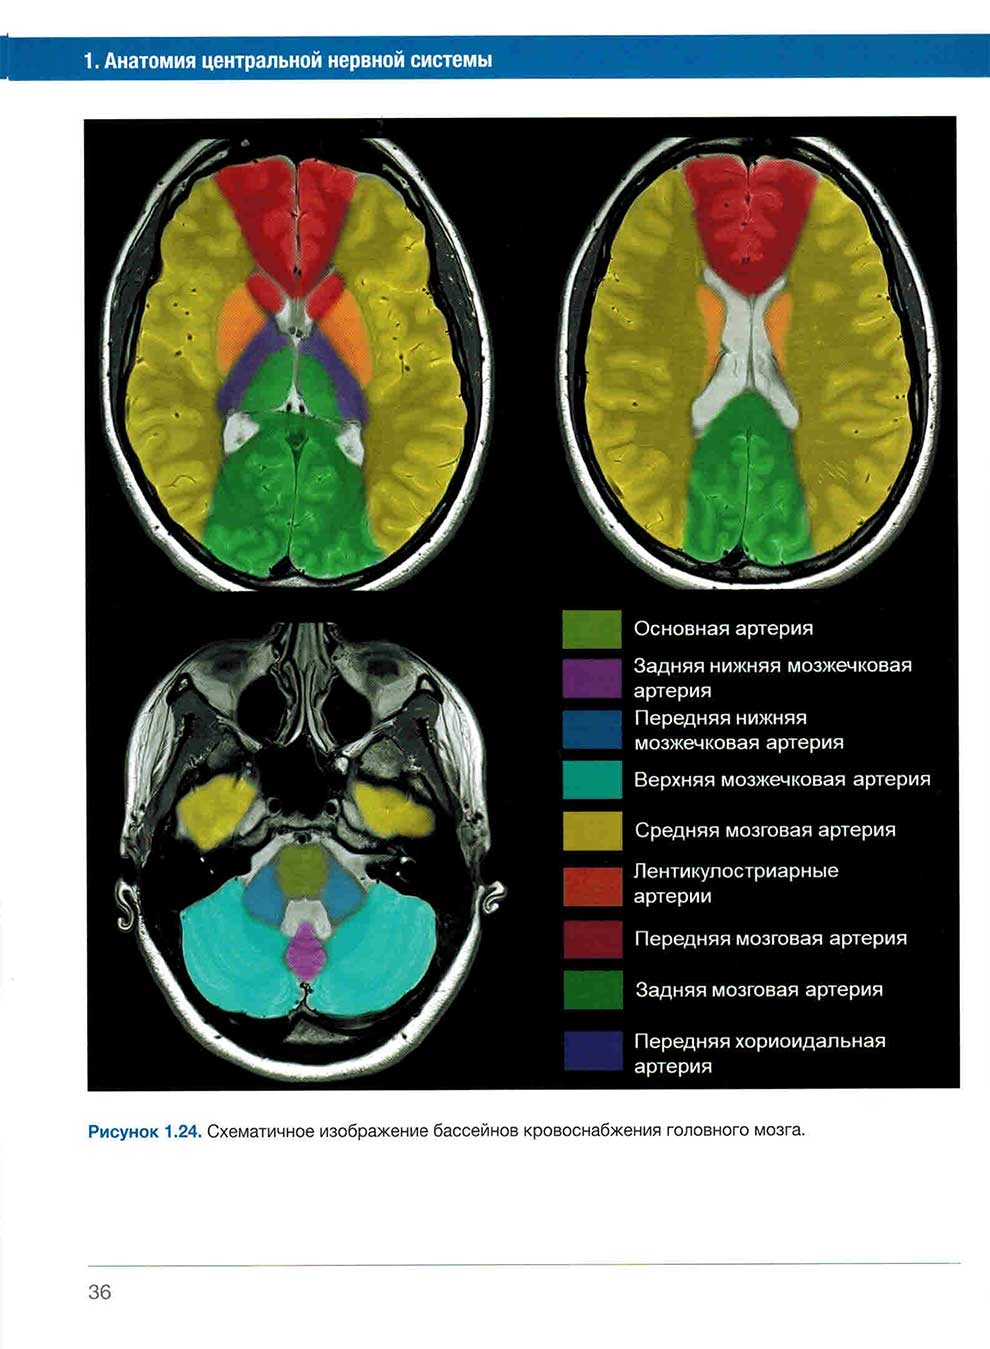 Рисунок 1.24. Схематичное изображение бассейнов кровоснабжения головного мозга.